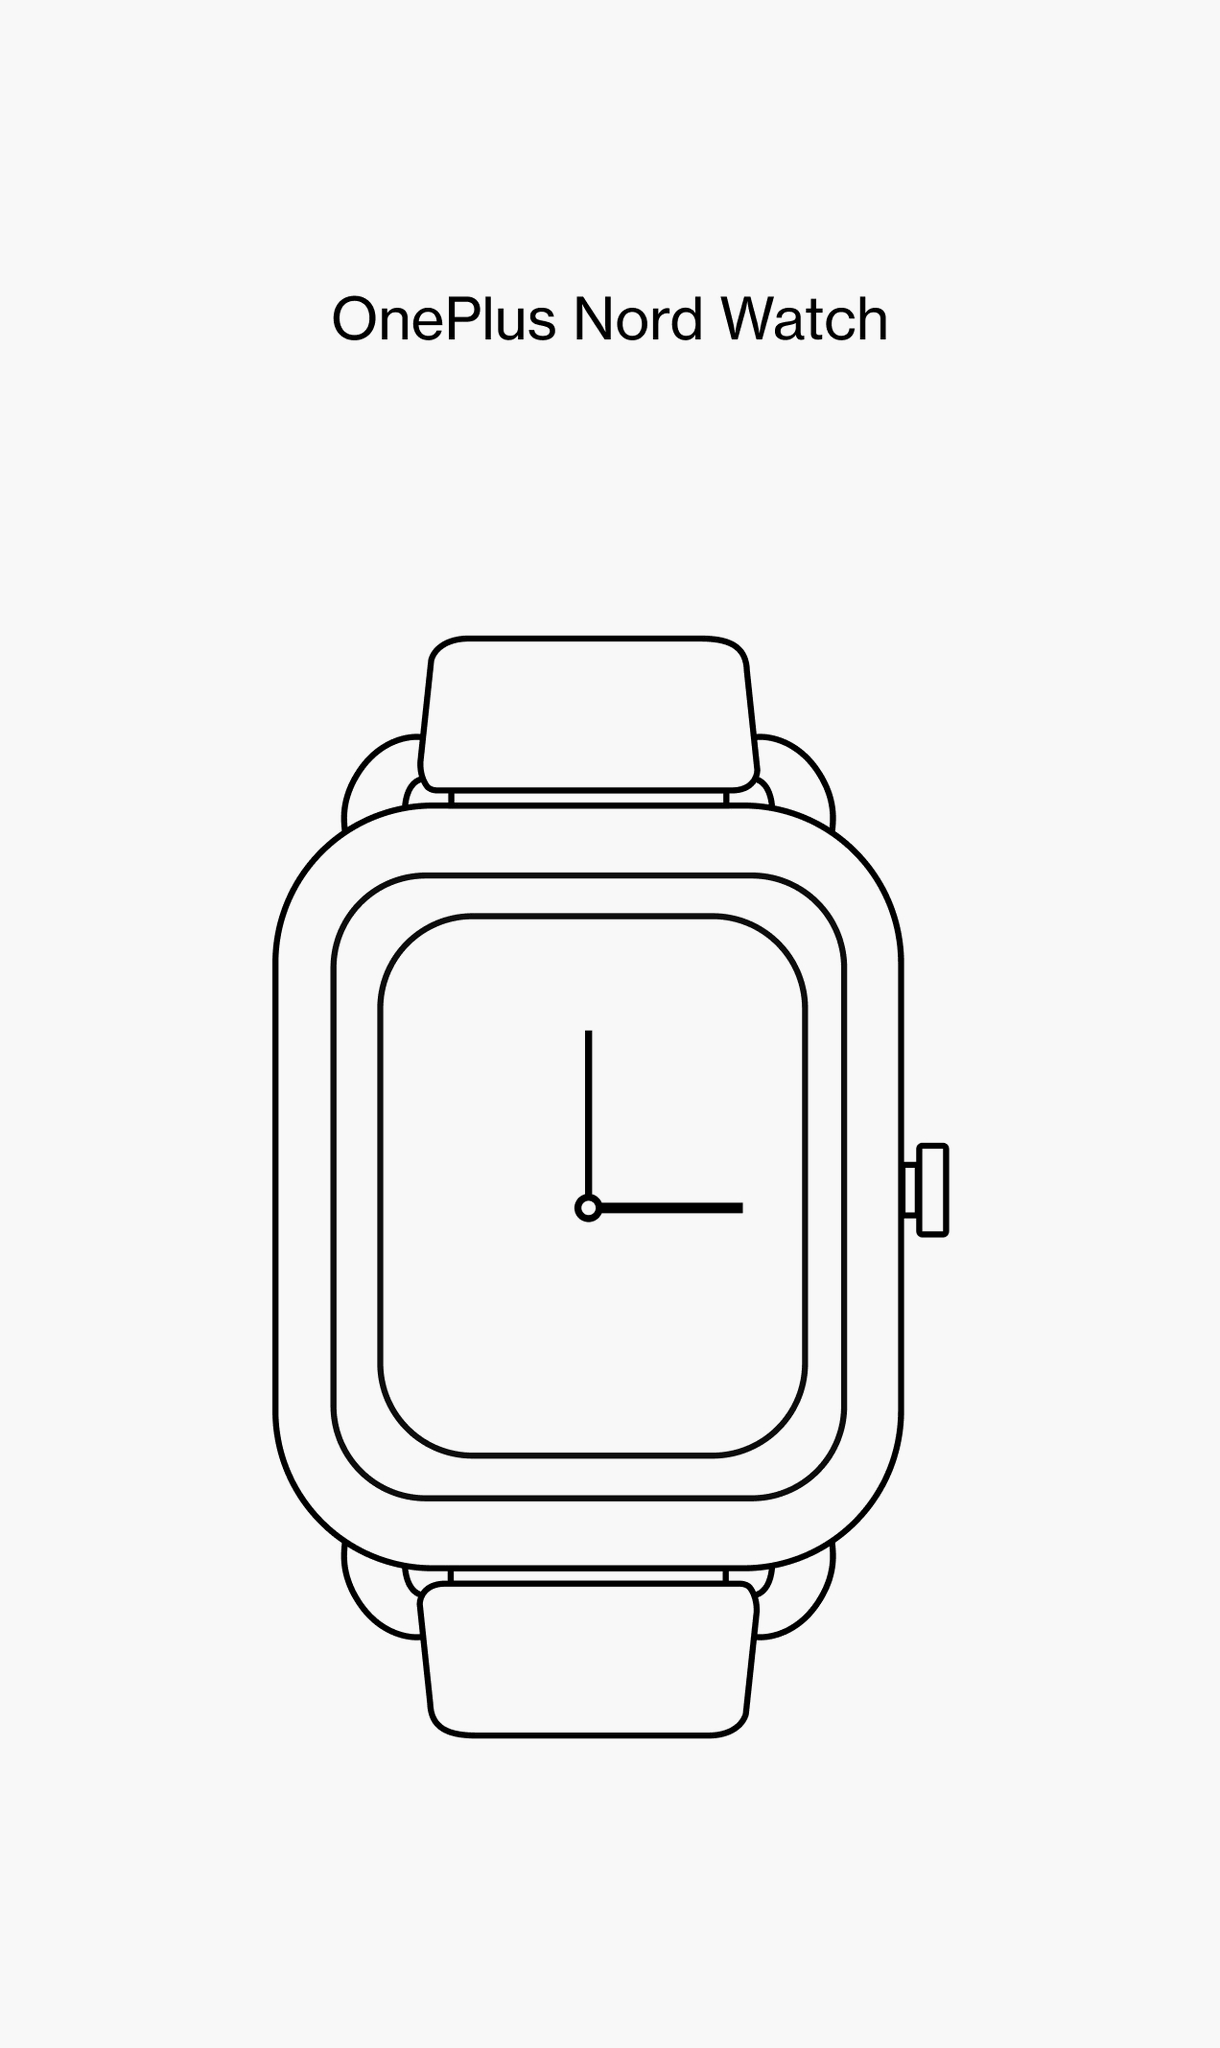 OnePlus Nord Watch schematic